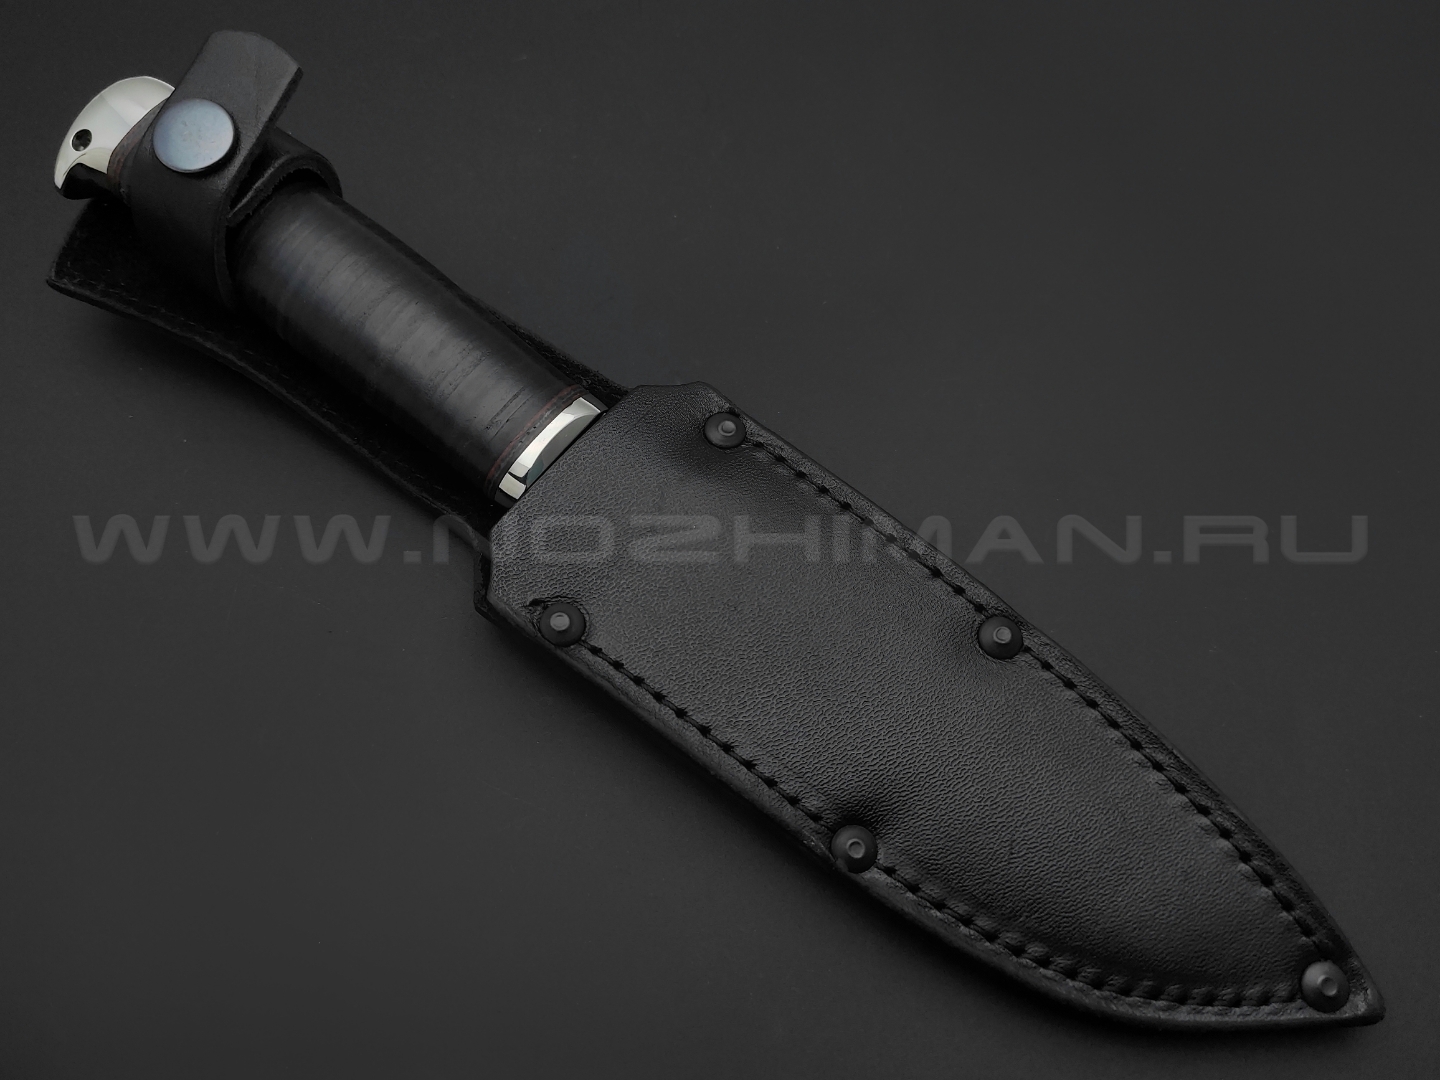 Титов и Солдатова нож Комбат-4 сталь 95Х18, рукоять наборная кожа, мельхиор